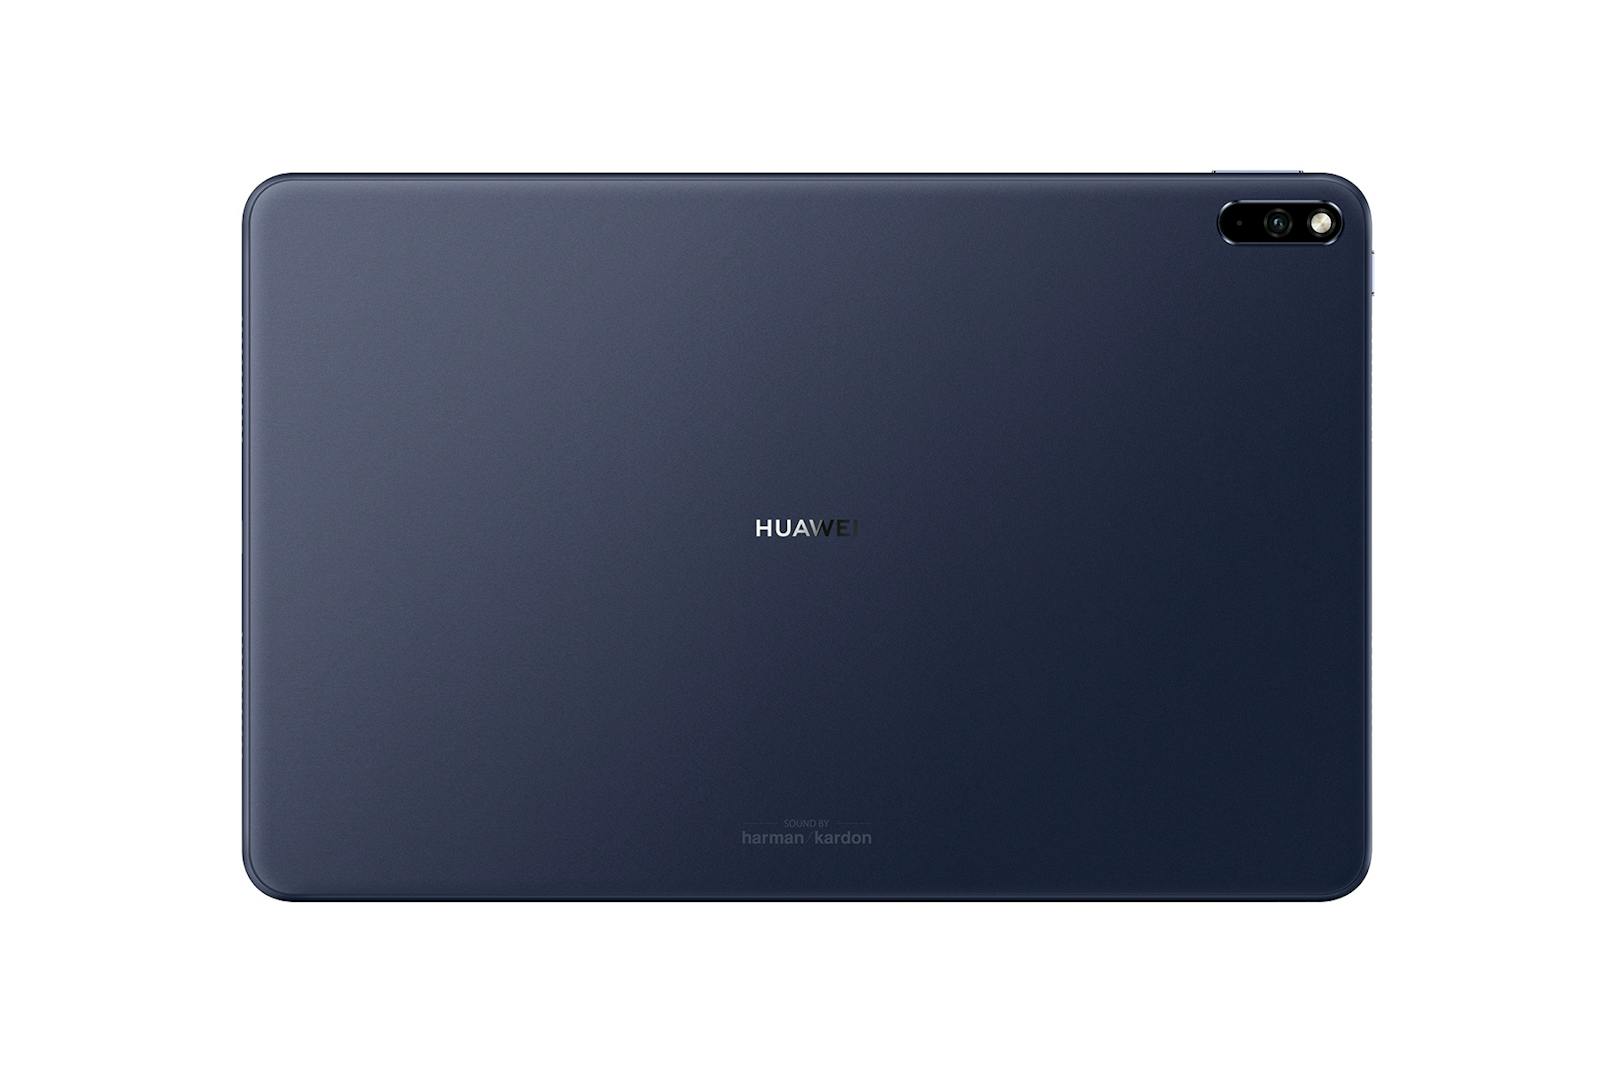 Im neuen Tablet arbeitet der Kirin 990 Chip samt 16 Core Mali-G76 GPU. Das Gehäuse ist aus einer Magnesium-Legierung, die kratzfest wirkt und Fingerabdrücke abweist.